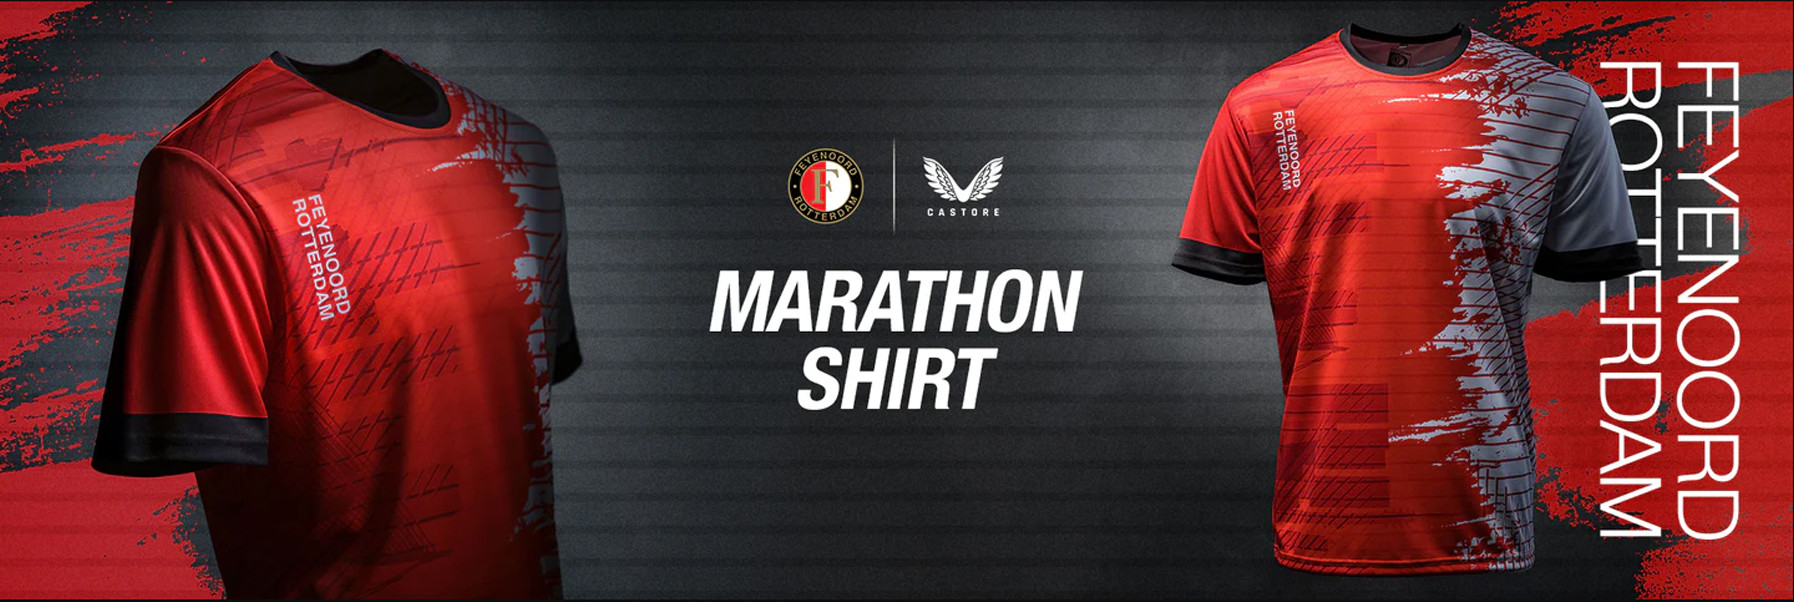 Feyenoord presenteert in aanloop naar Marathon van Rotterdam een exclusief marathonshirt